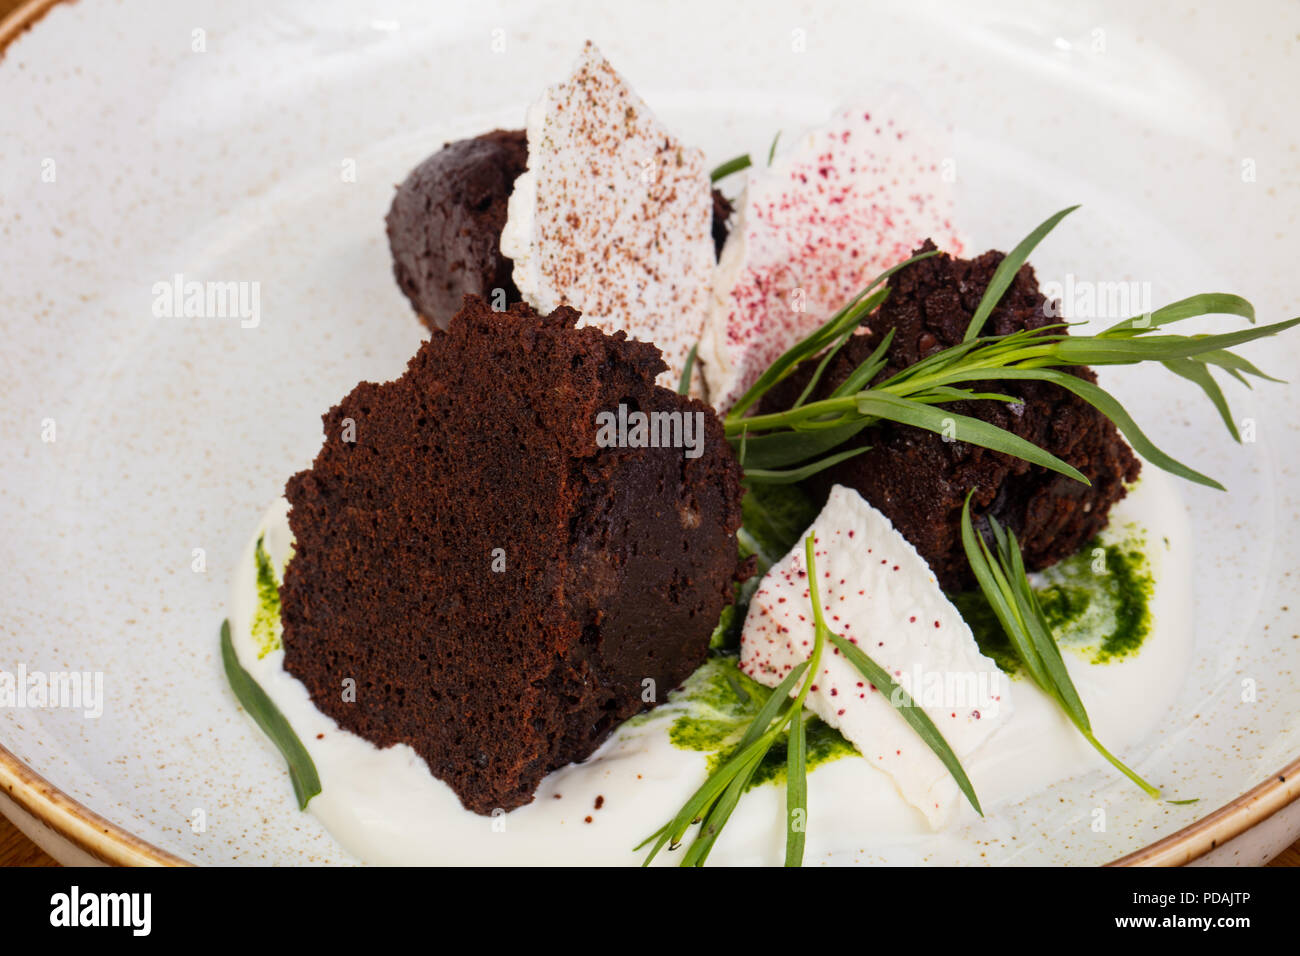 Tasty Brownie cake with estragon Stock Photo